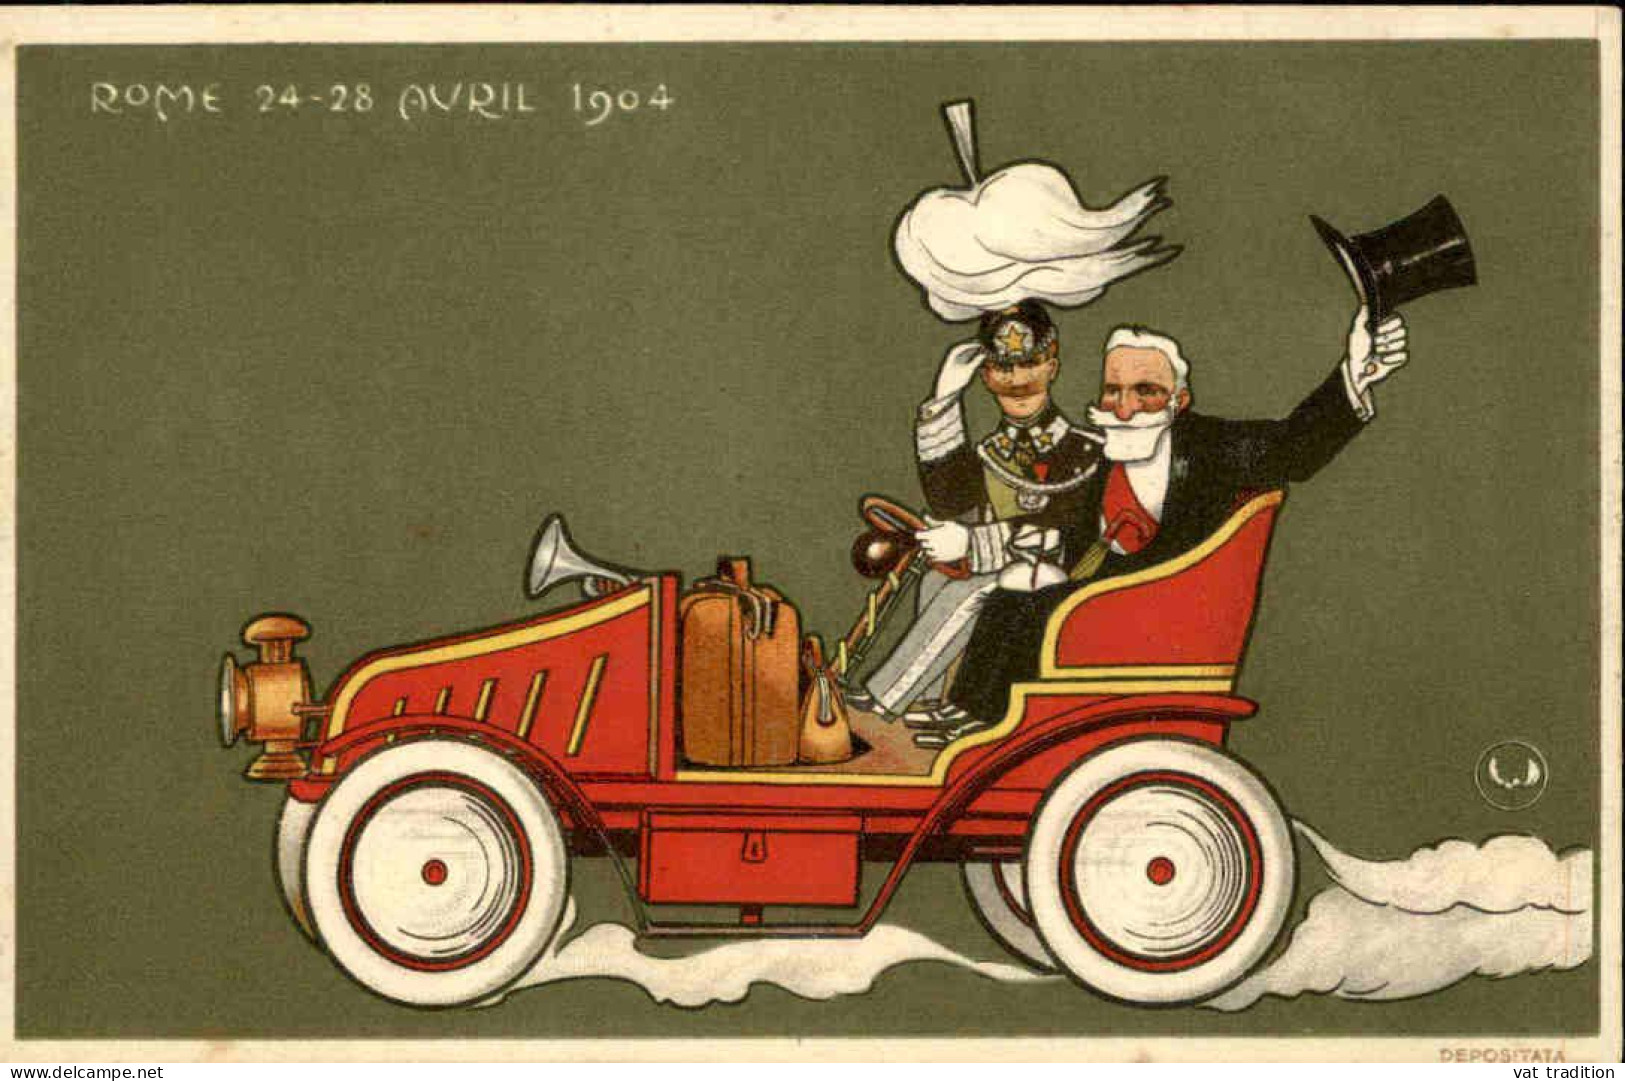 POLITIQUE - Carte Postale - Rome 24/28 Avril 1904 - L 152213 - Events